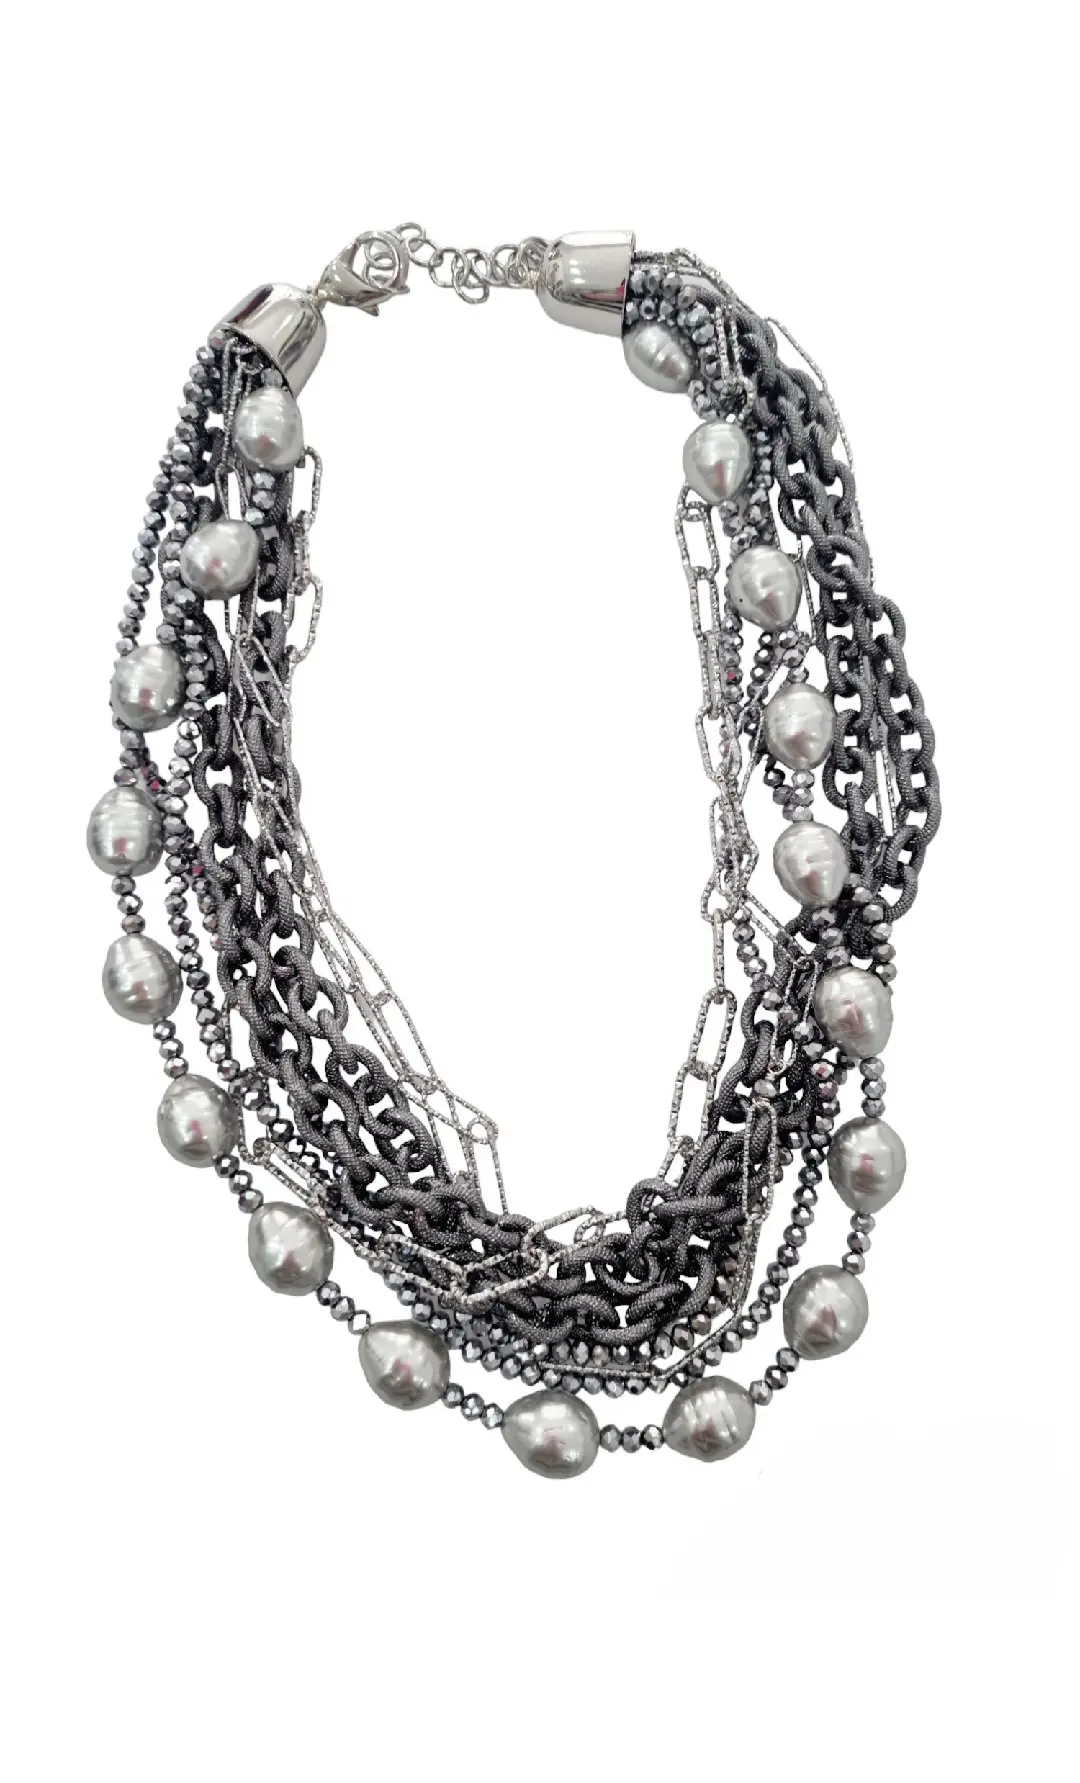 Collar gargantilla elaborado con perlas de maioraca gris, cristales y cadenas hipoalergénicas de raso gris claro y oscuro. Largo regulable 58cm.